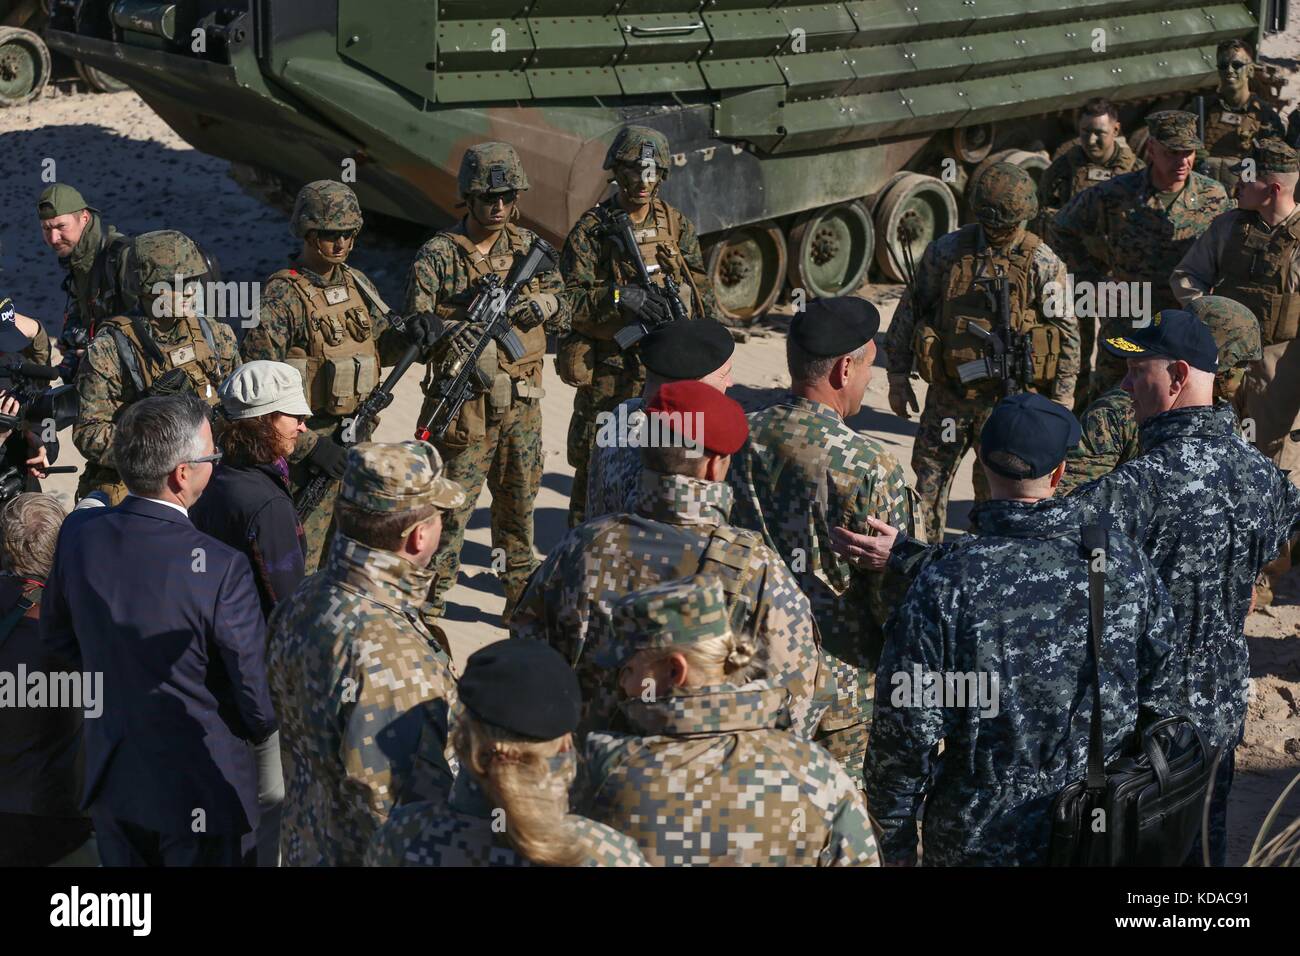 Nato parlare di leadership a US Marine Corps e soldati lettone dopo un assalto anfibio simulazione durante l'esercizio baltops giugno 6, 2017 in Ventspils, Lettonia. Foto Stock